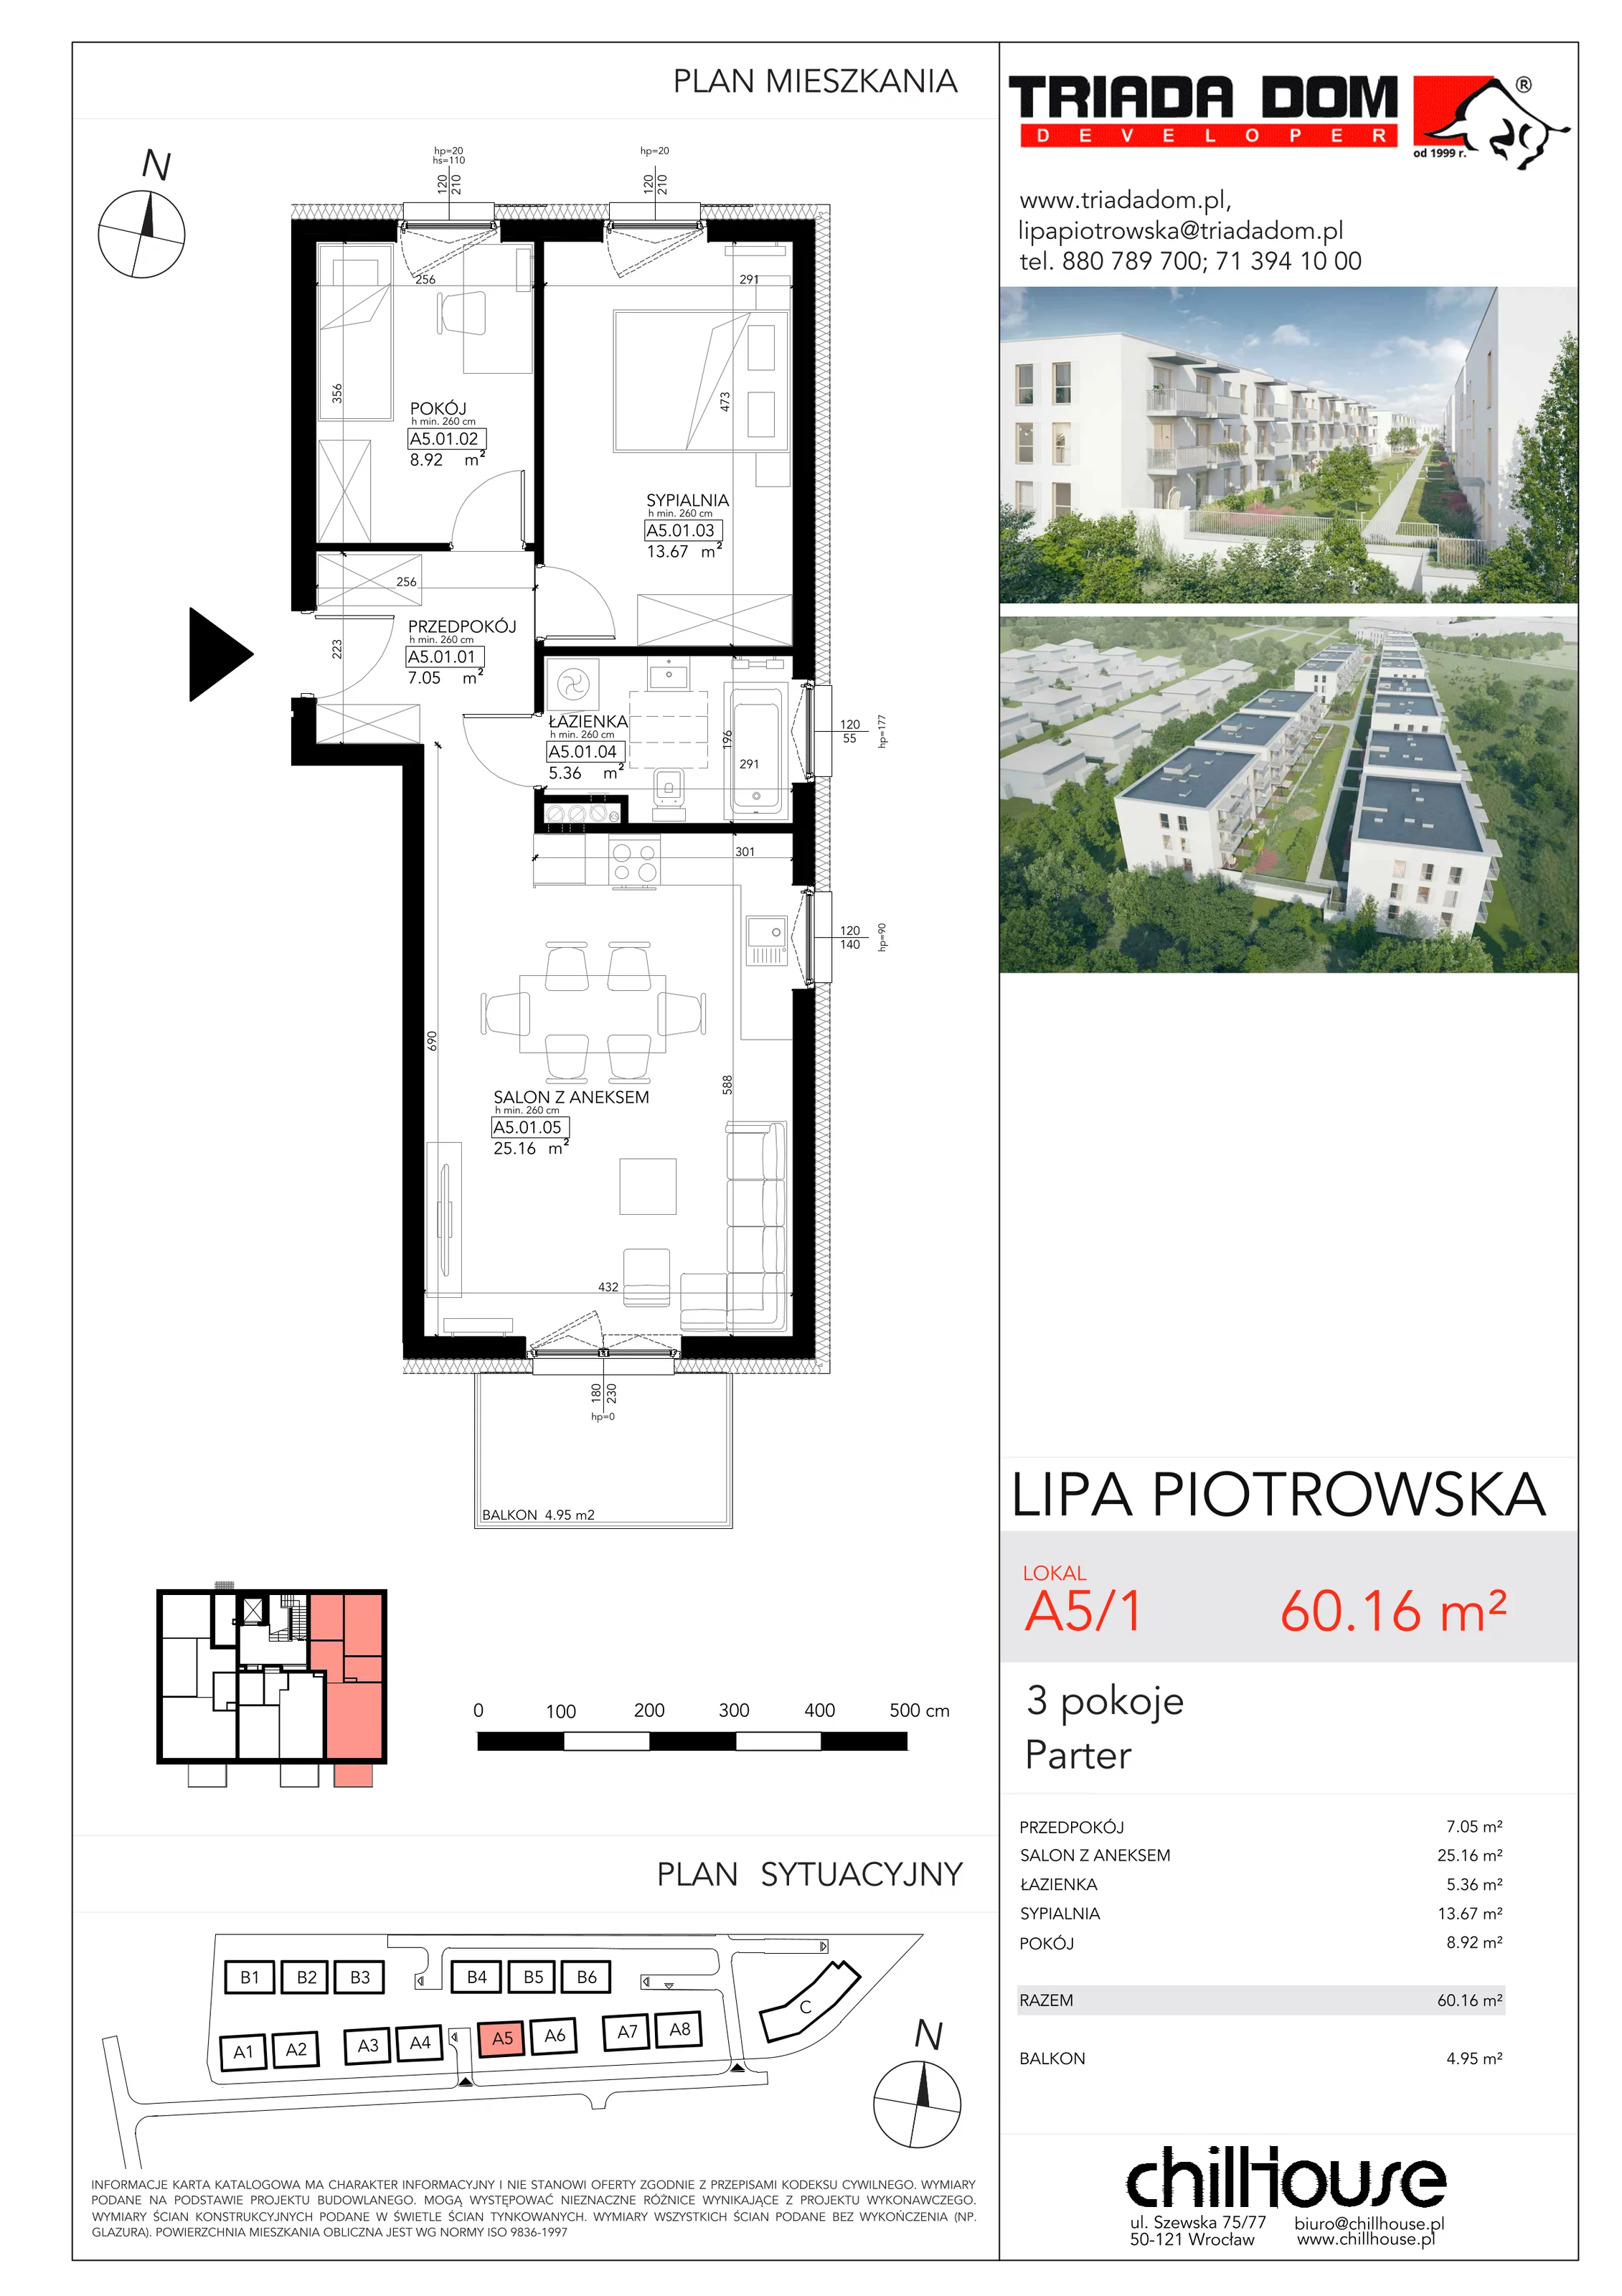 Mieszkanie 60,16 m², parter, oferta nr A51, Lipa Piotrowska, Wrocław, Lipa Piotrowska, ul. Lawendowa / Melisowa